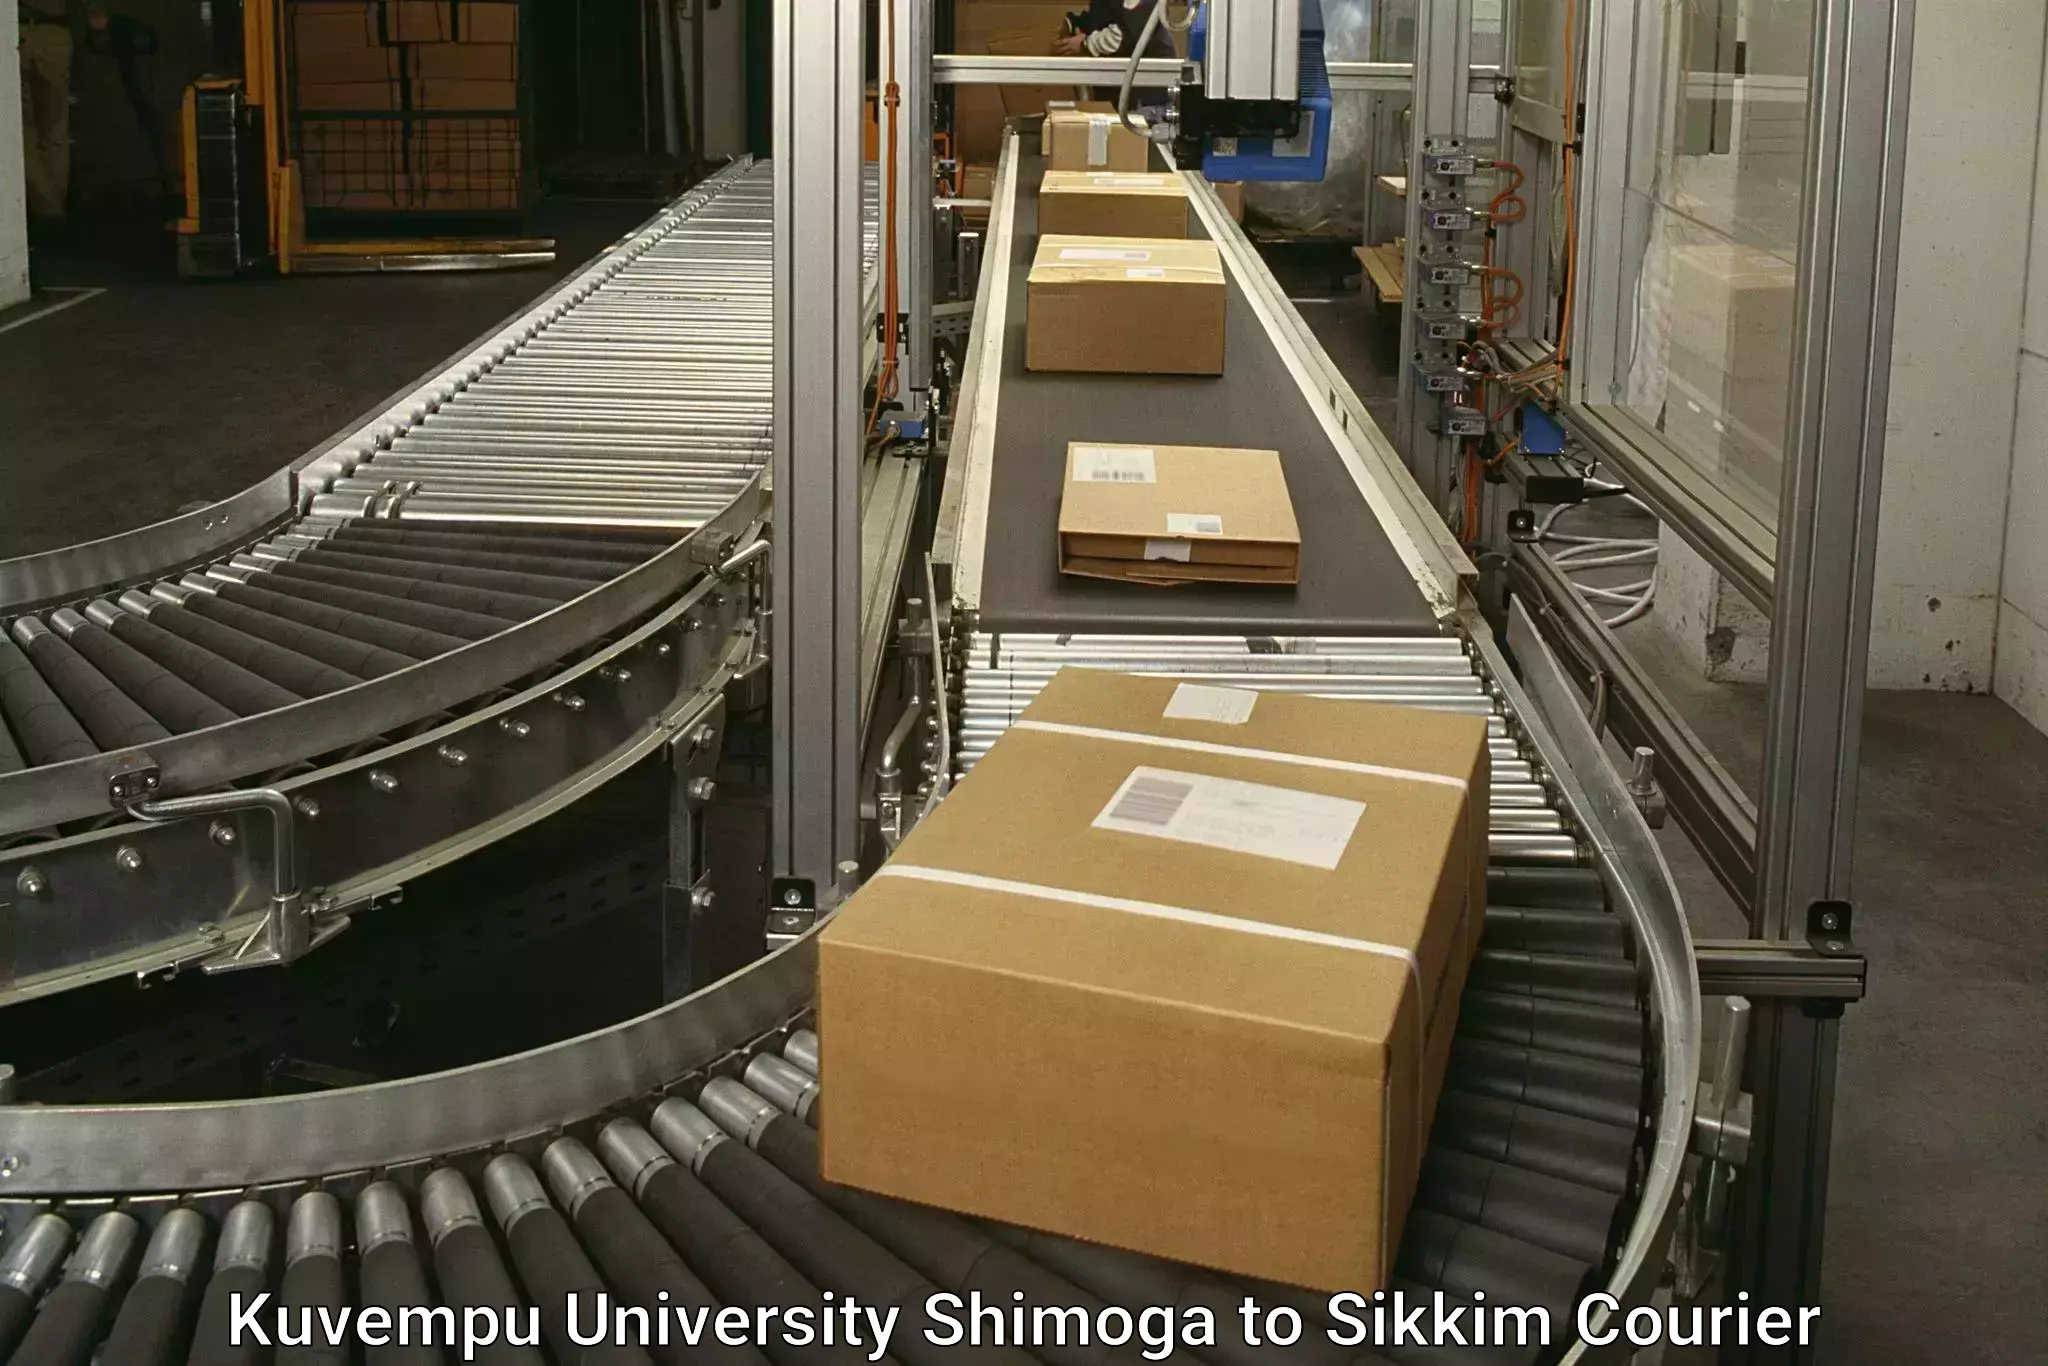 Courier service innovation Kuvempu University Shimoga to South Sikkim